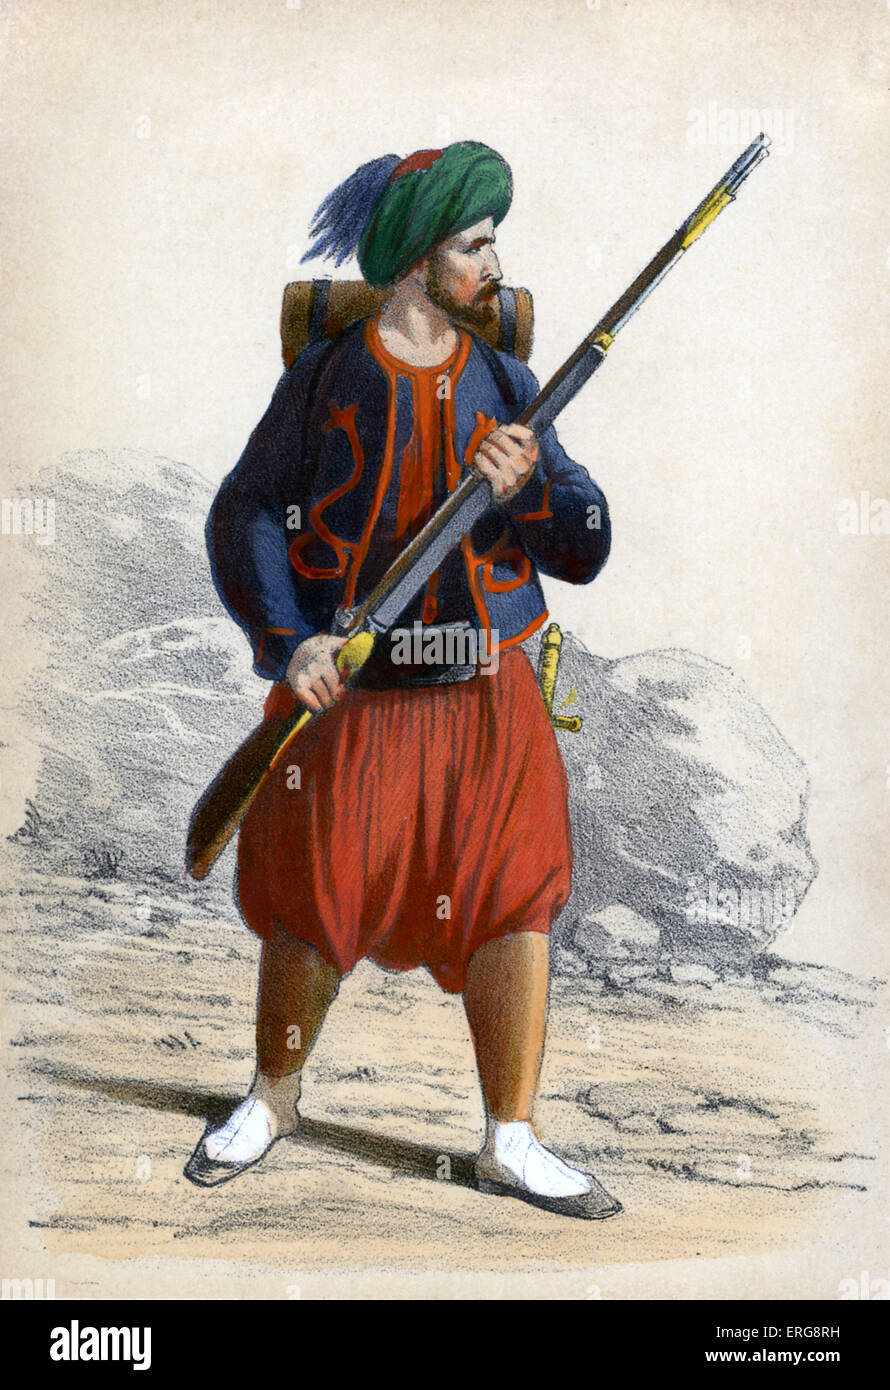 Zouave: miembro de algunos regimientos de infantería ligera en el ejército francés que prestaban servicios en el norte de África francesa entre 1831-1962. Novedades WYR5009 Foto de stock